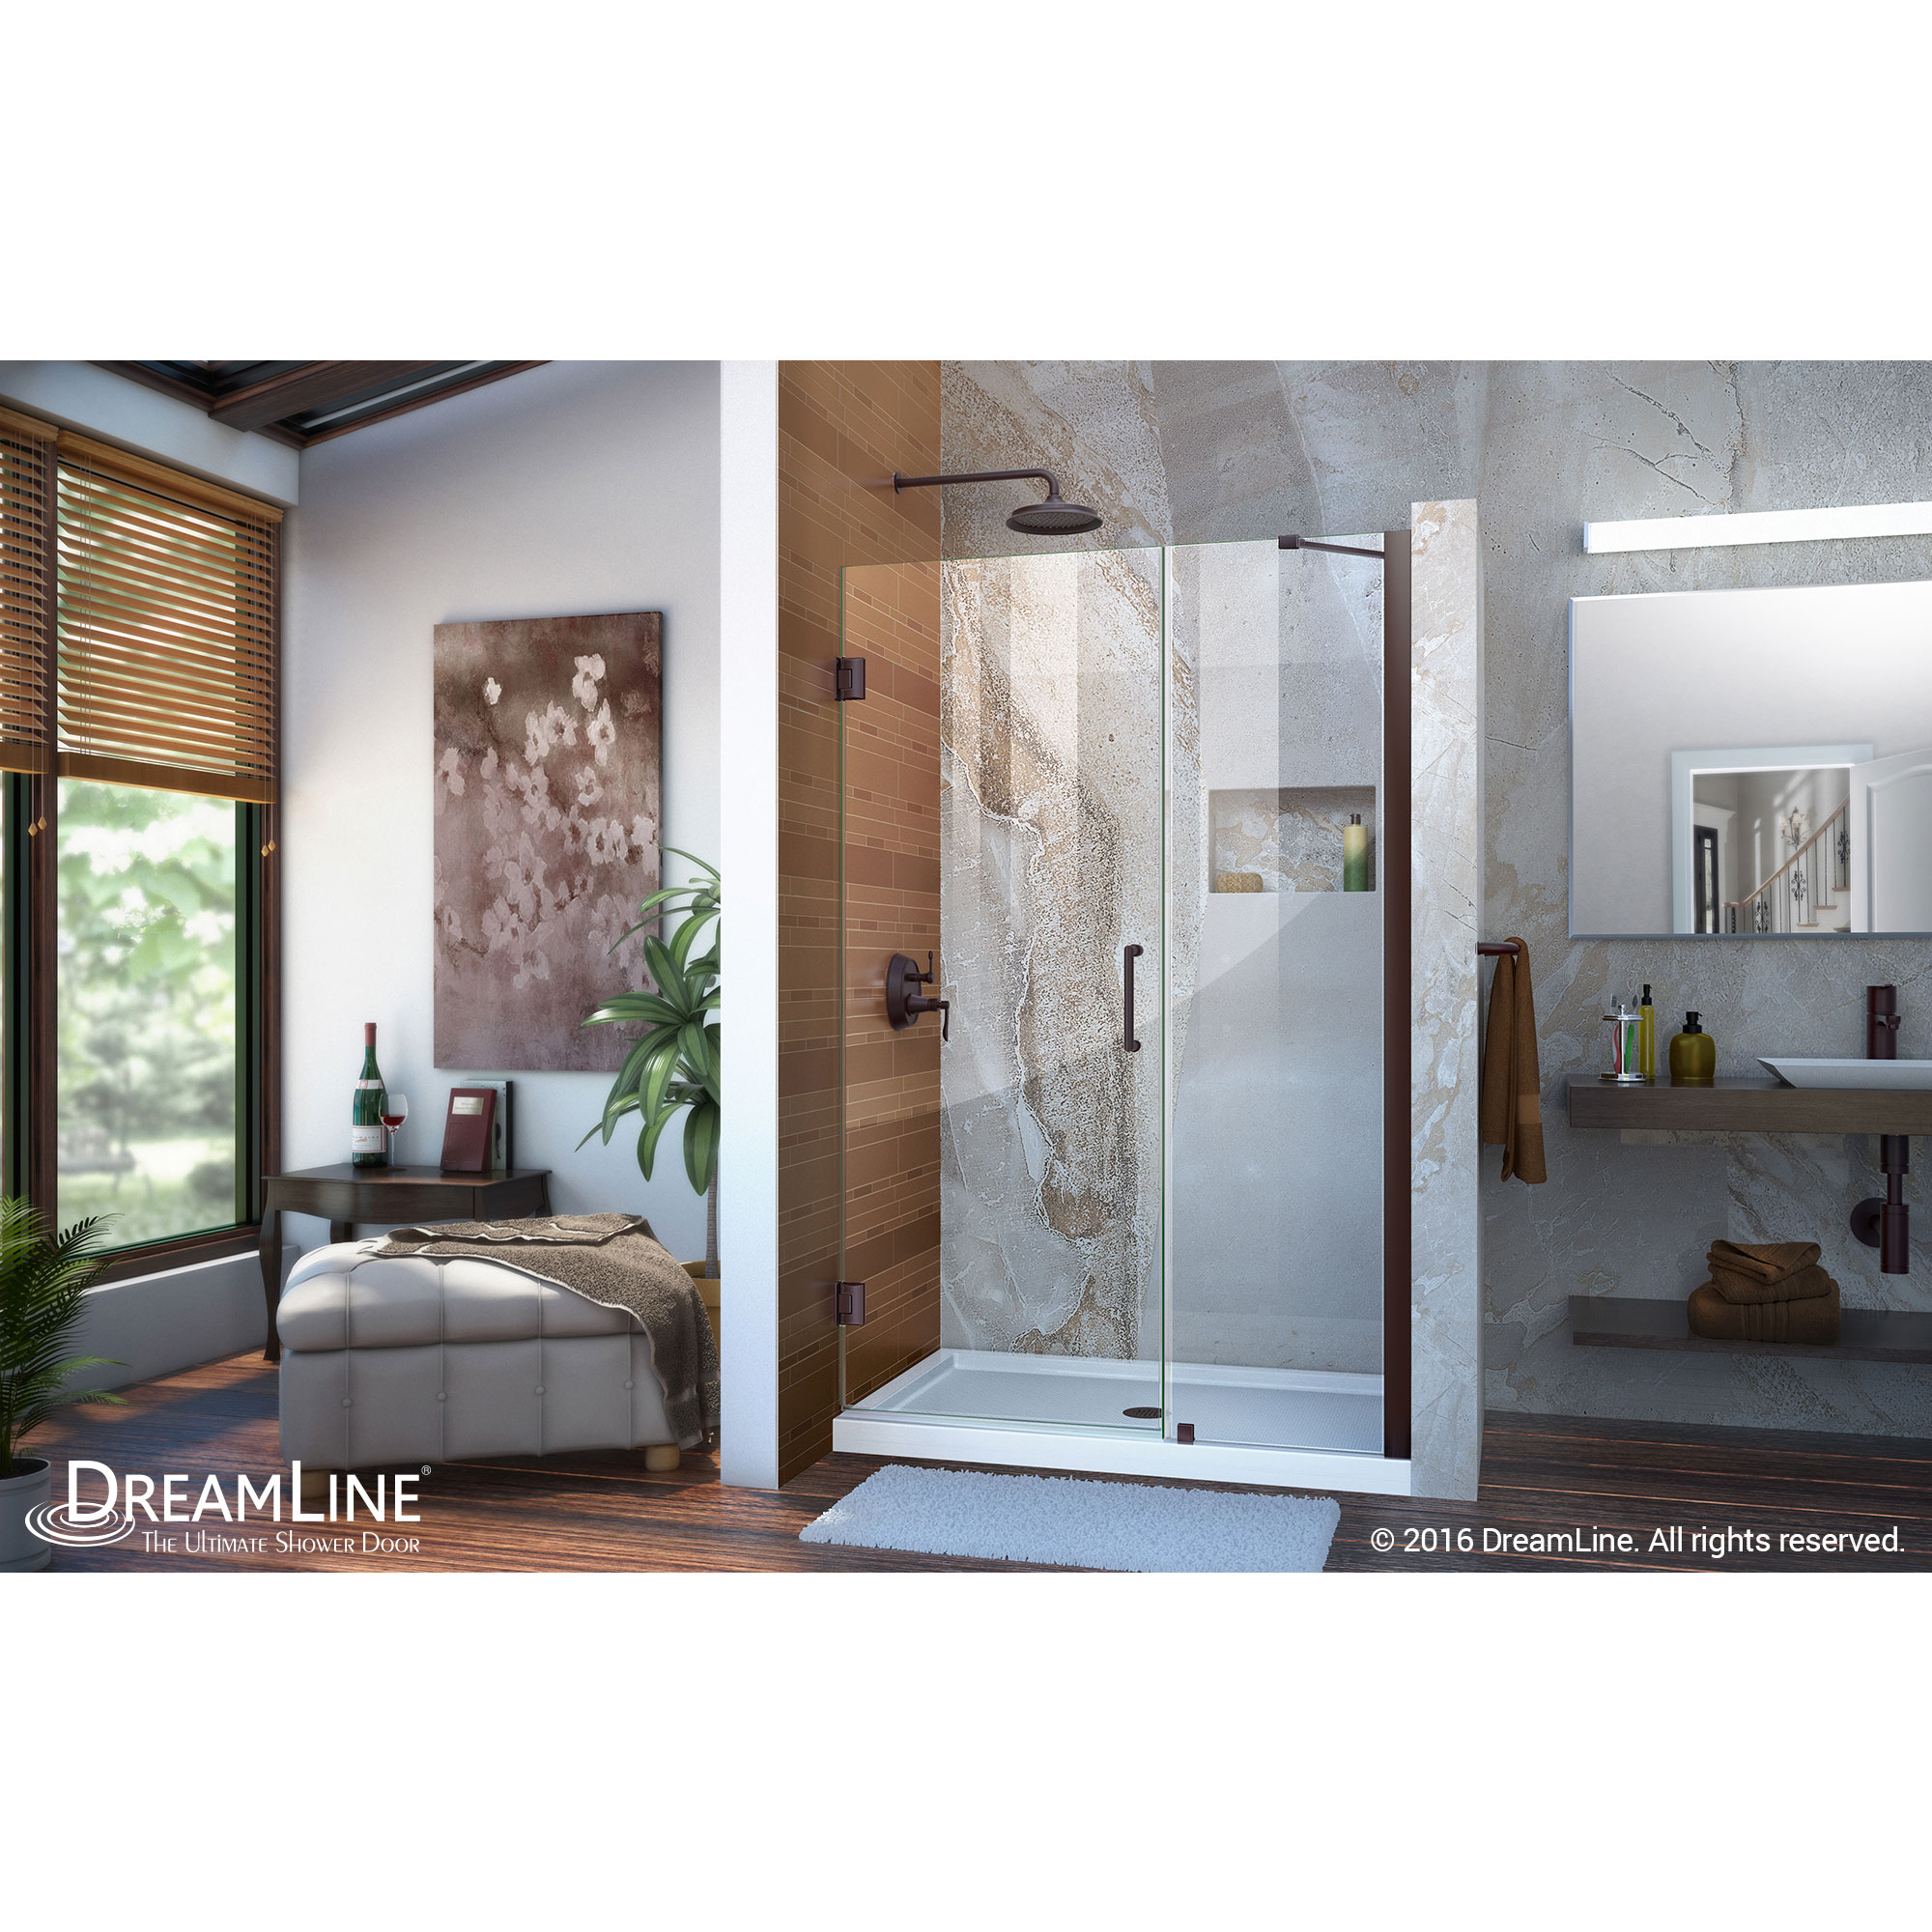 Unidoor 46 to 47" Frameless Hinged Shower Door, Clear 3/8" Glass Door, Oil Rubbed Bronze